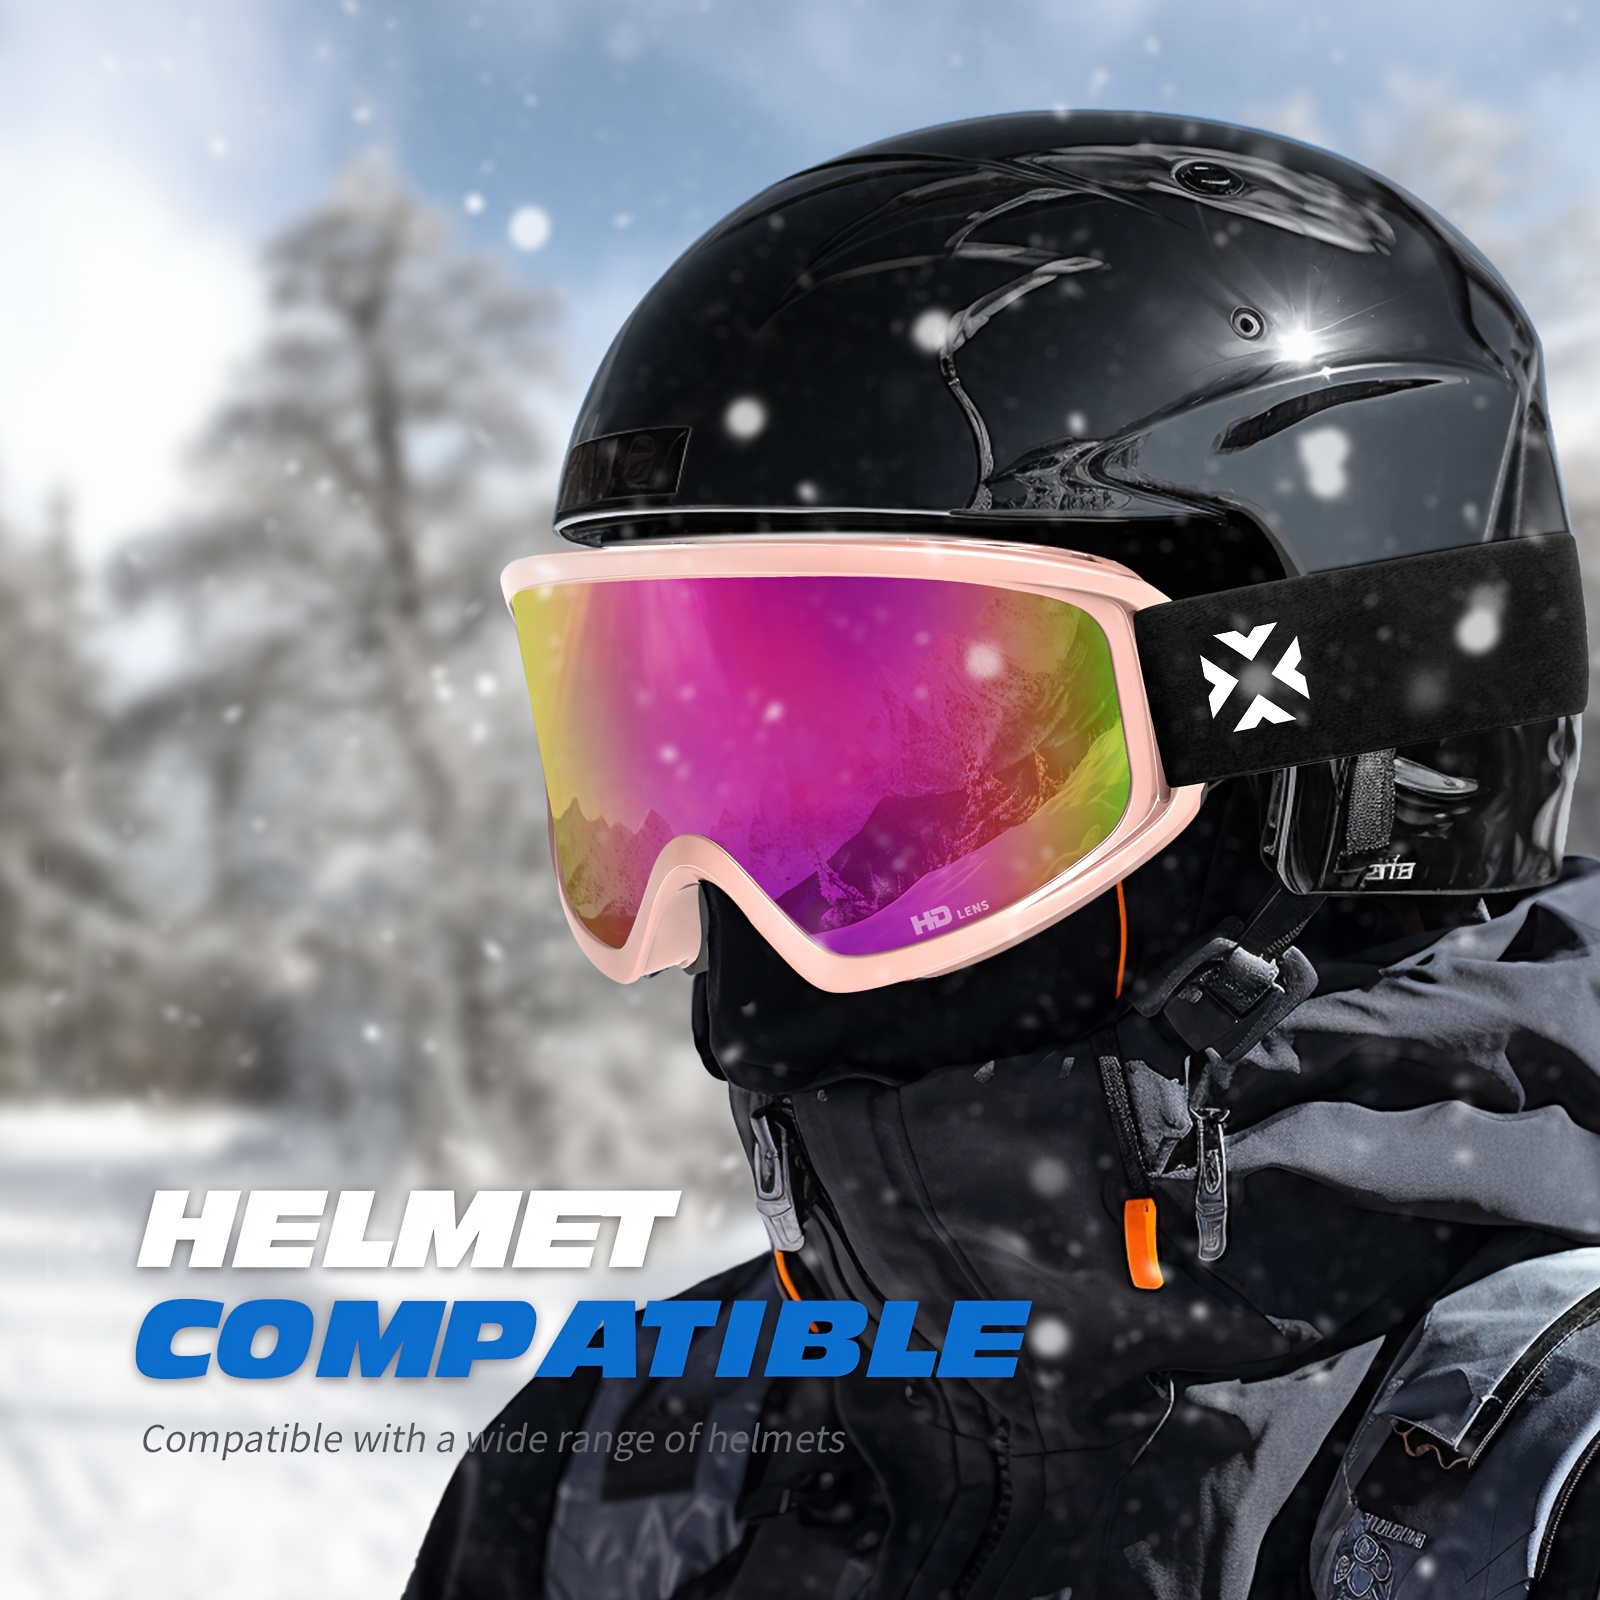 Gafas de esquí Juli, gafas de snowboard para hombre y mujer, moto de nieve,  esquí y patinaje